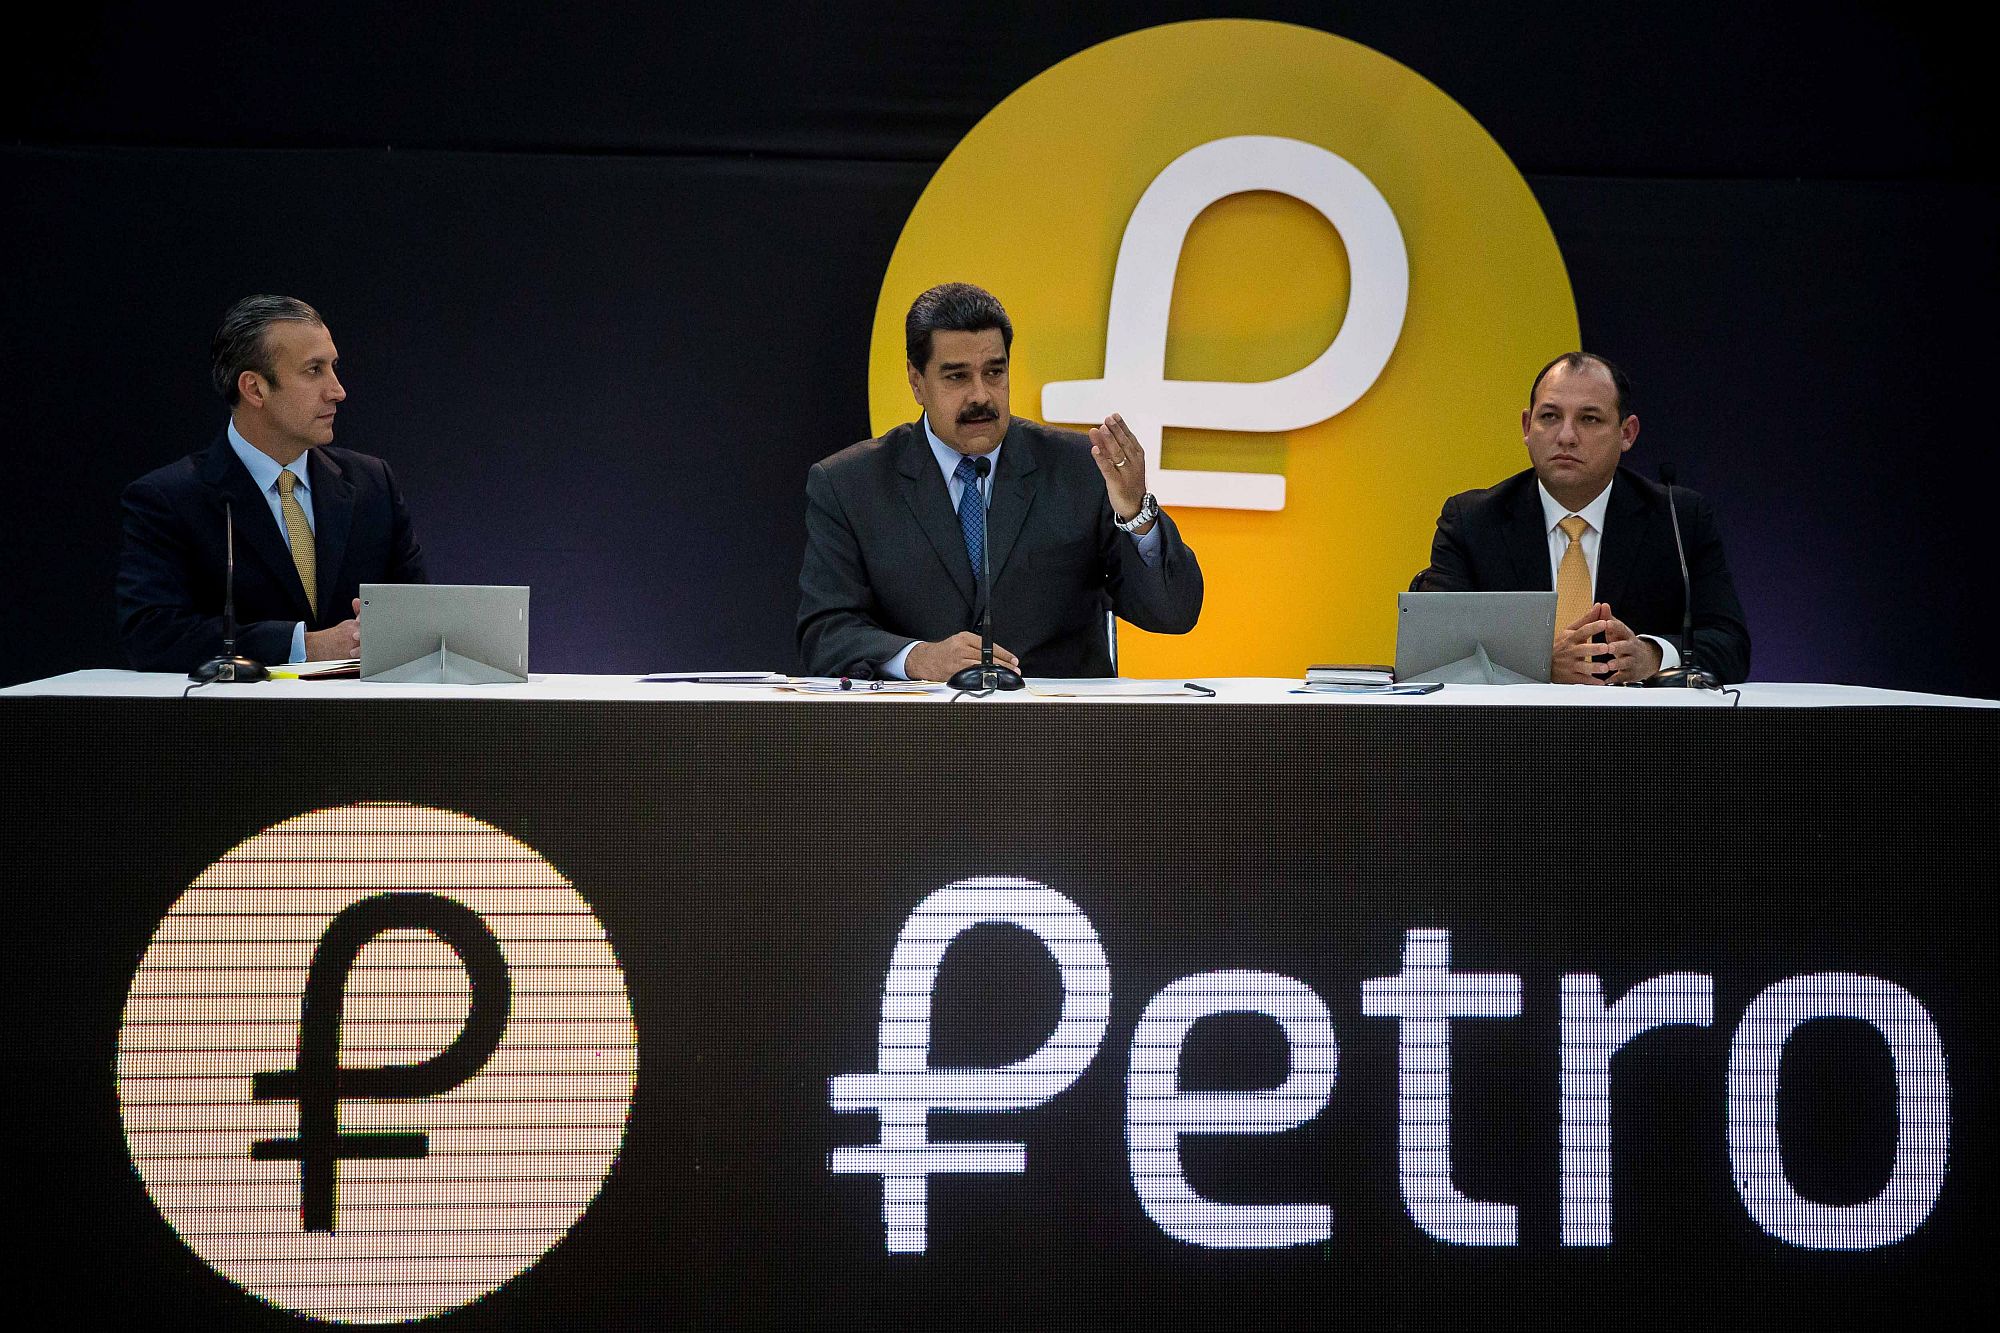 Nicolas Maduro, Tareck El Aissami és Hugbel Roa az El Petro bevezetésekor tartott kormányzati eseményen a Miraflores palotában, Caracasban 2018. február 20-án. EPA/MIGUEL GUTIERREZ